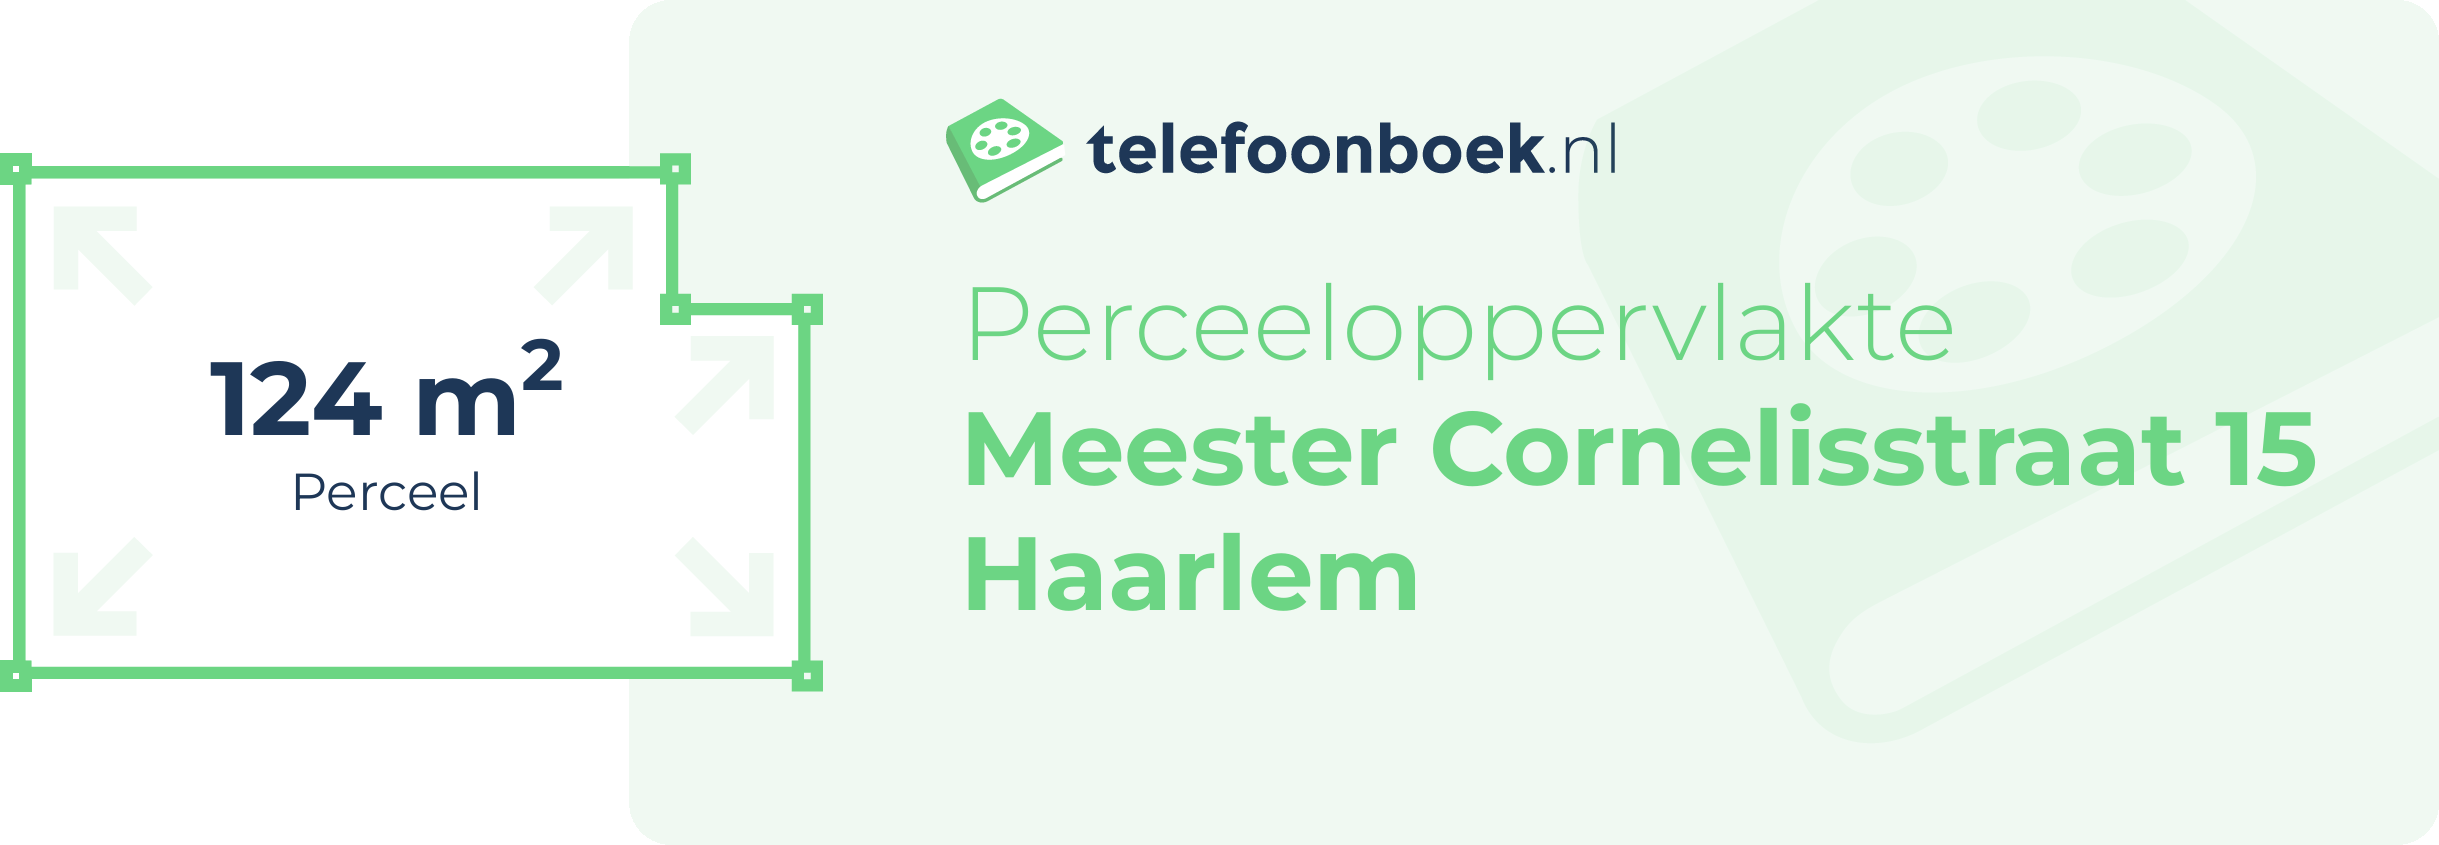 Perceeloppervlakte Meester Cornelisstraat 15 Haarlem